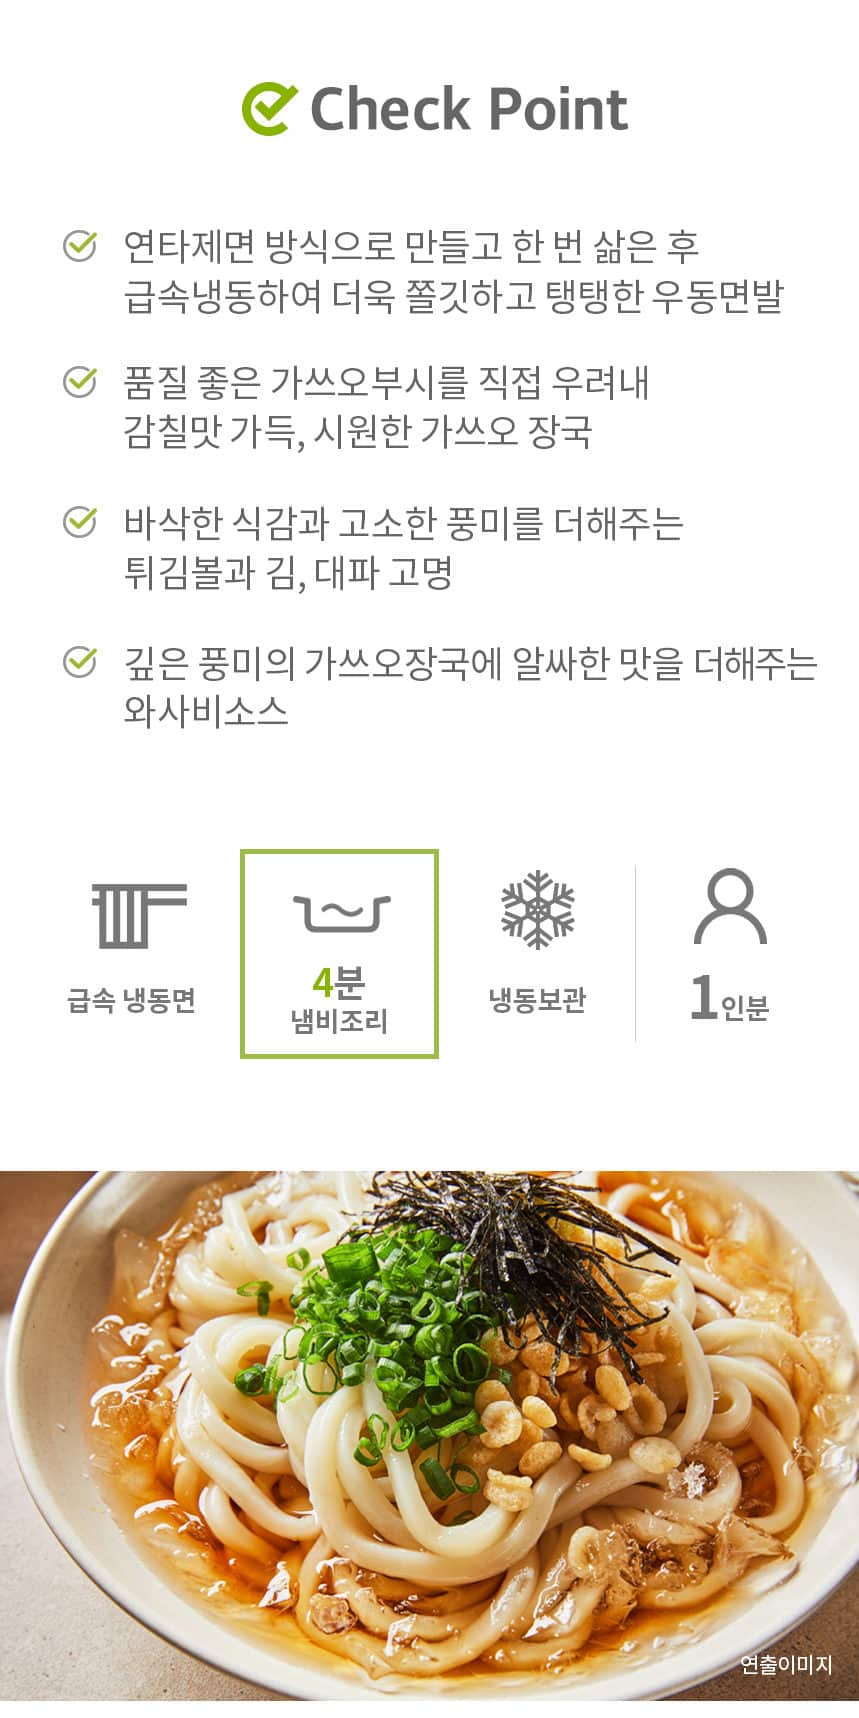 韓國食品-[면사랑] 가쓰오 냉우동 339g